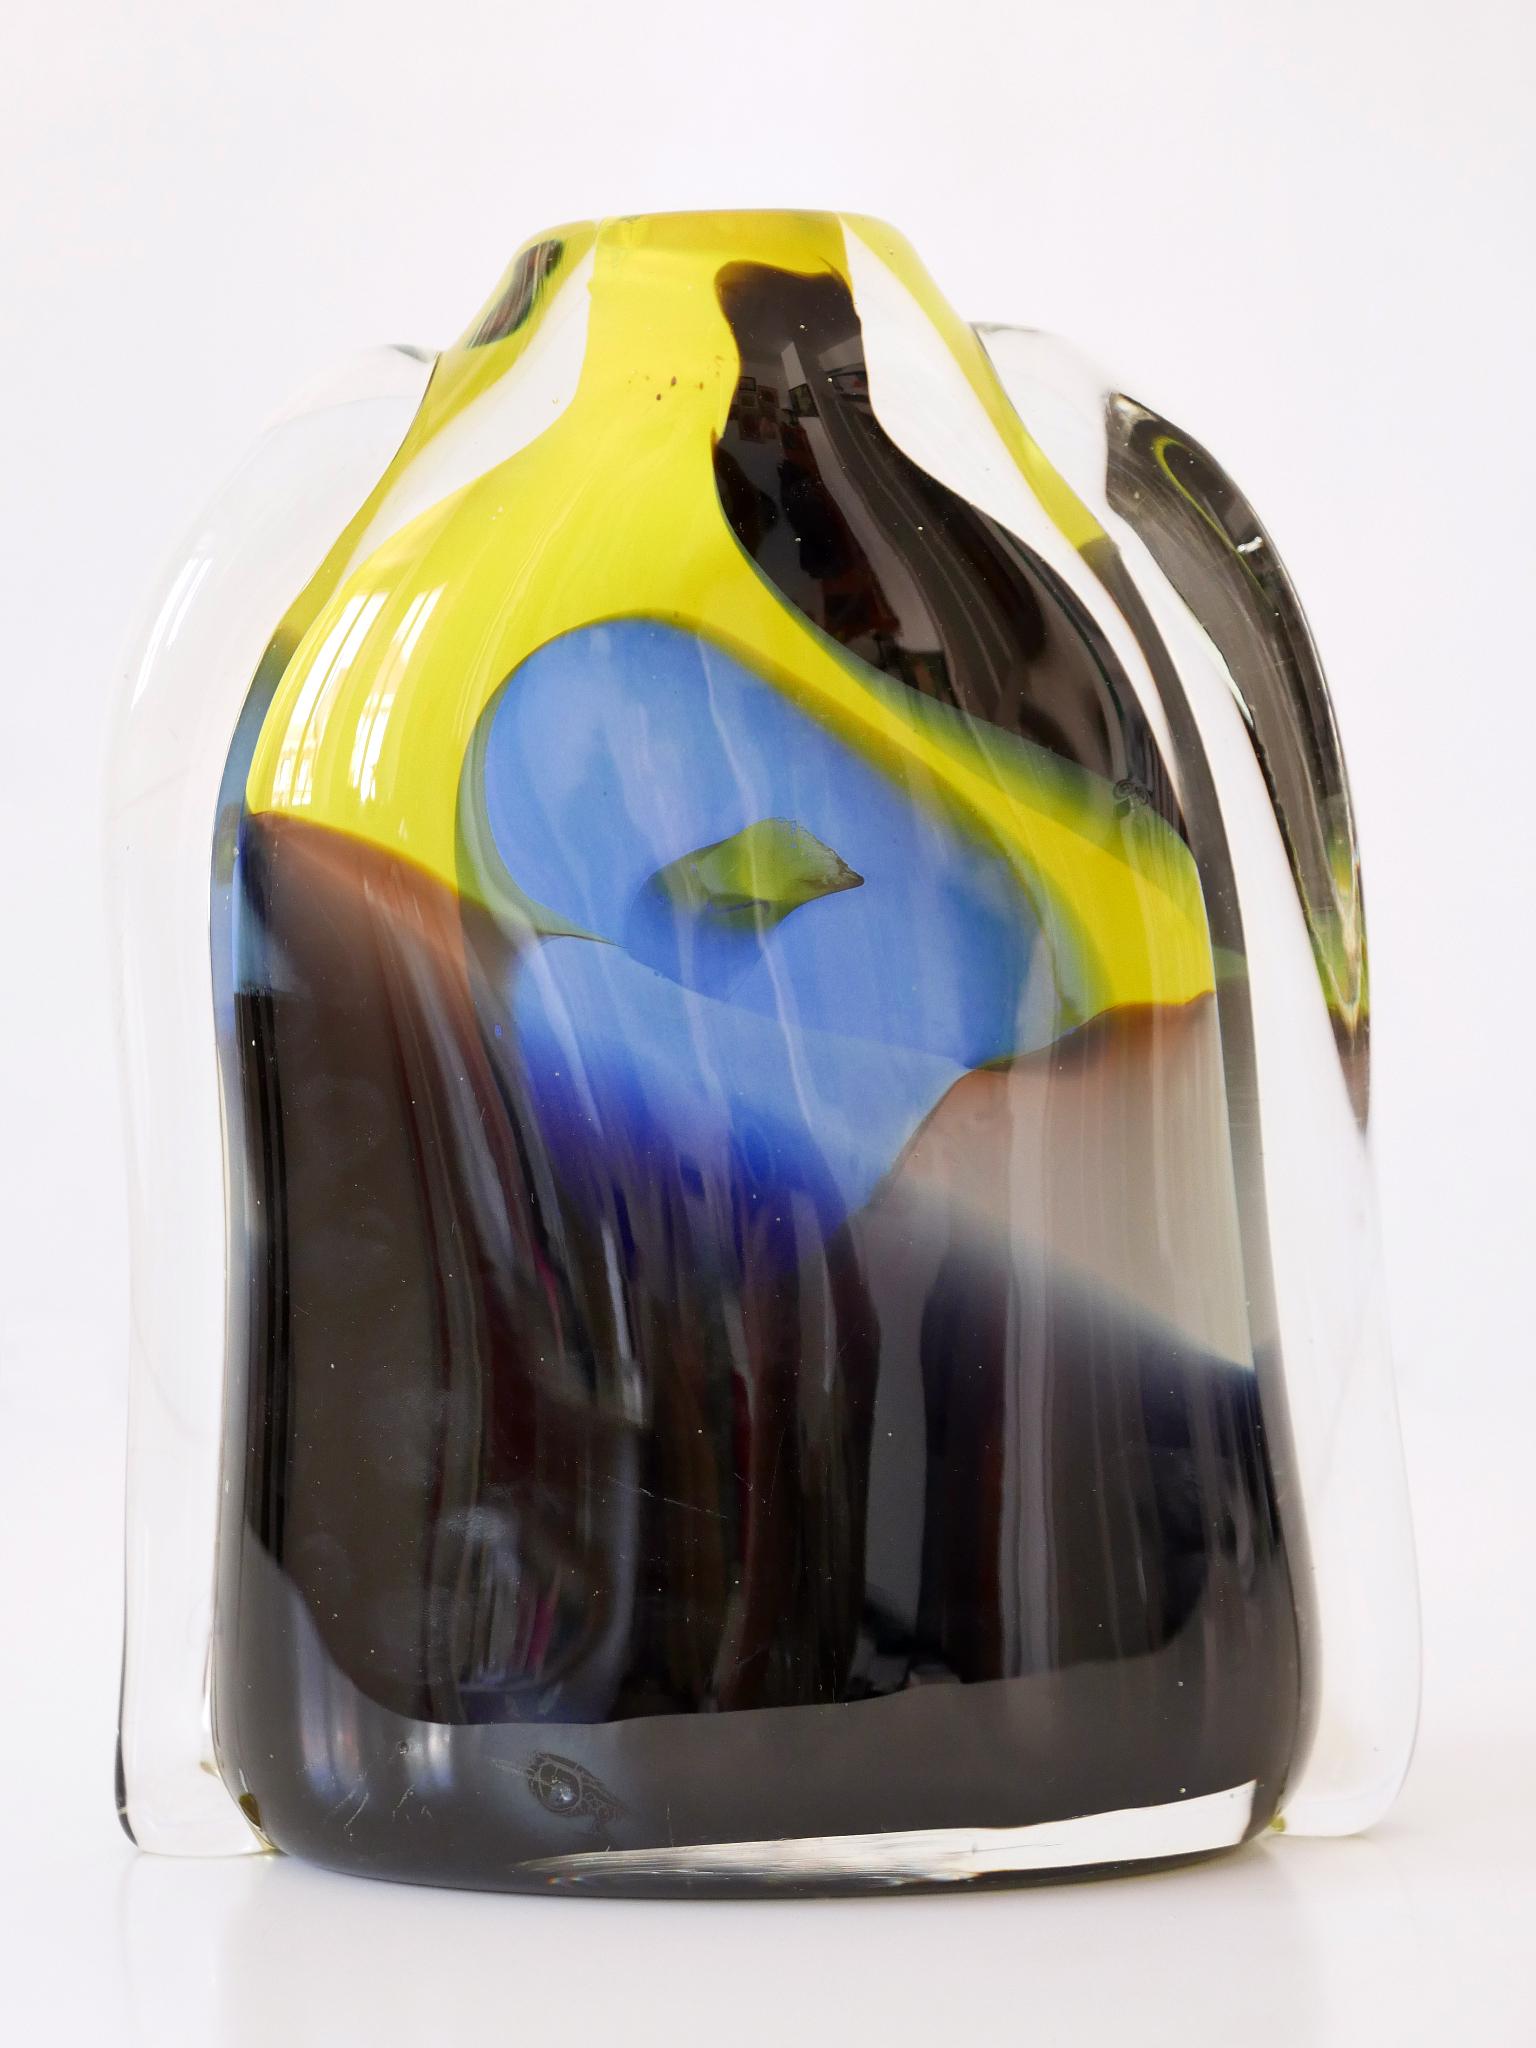 Hohe und sehr dekorative Vase aus postmodernem Murano-Glas mit schönen Farben. Hergestellt in Italien, 1990er Jahre.

Ausgeführt in dickem, mehrfarbigem Murano-Glas.

Abmessungen:
H 30 cm (11.82 in.)
W 9.45 in. (24 cm)
D 3,94 Zoll (10 cm)

Gewicht: